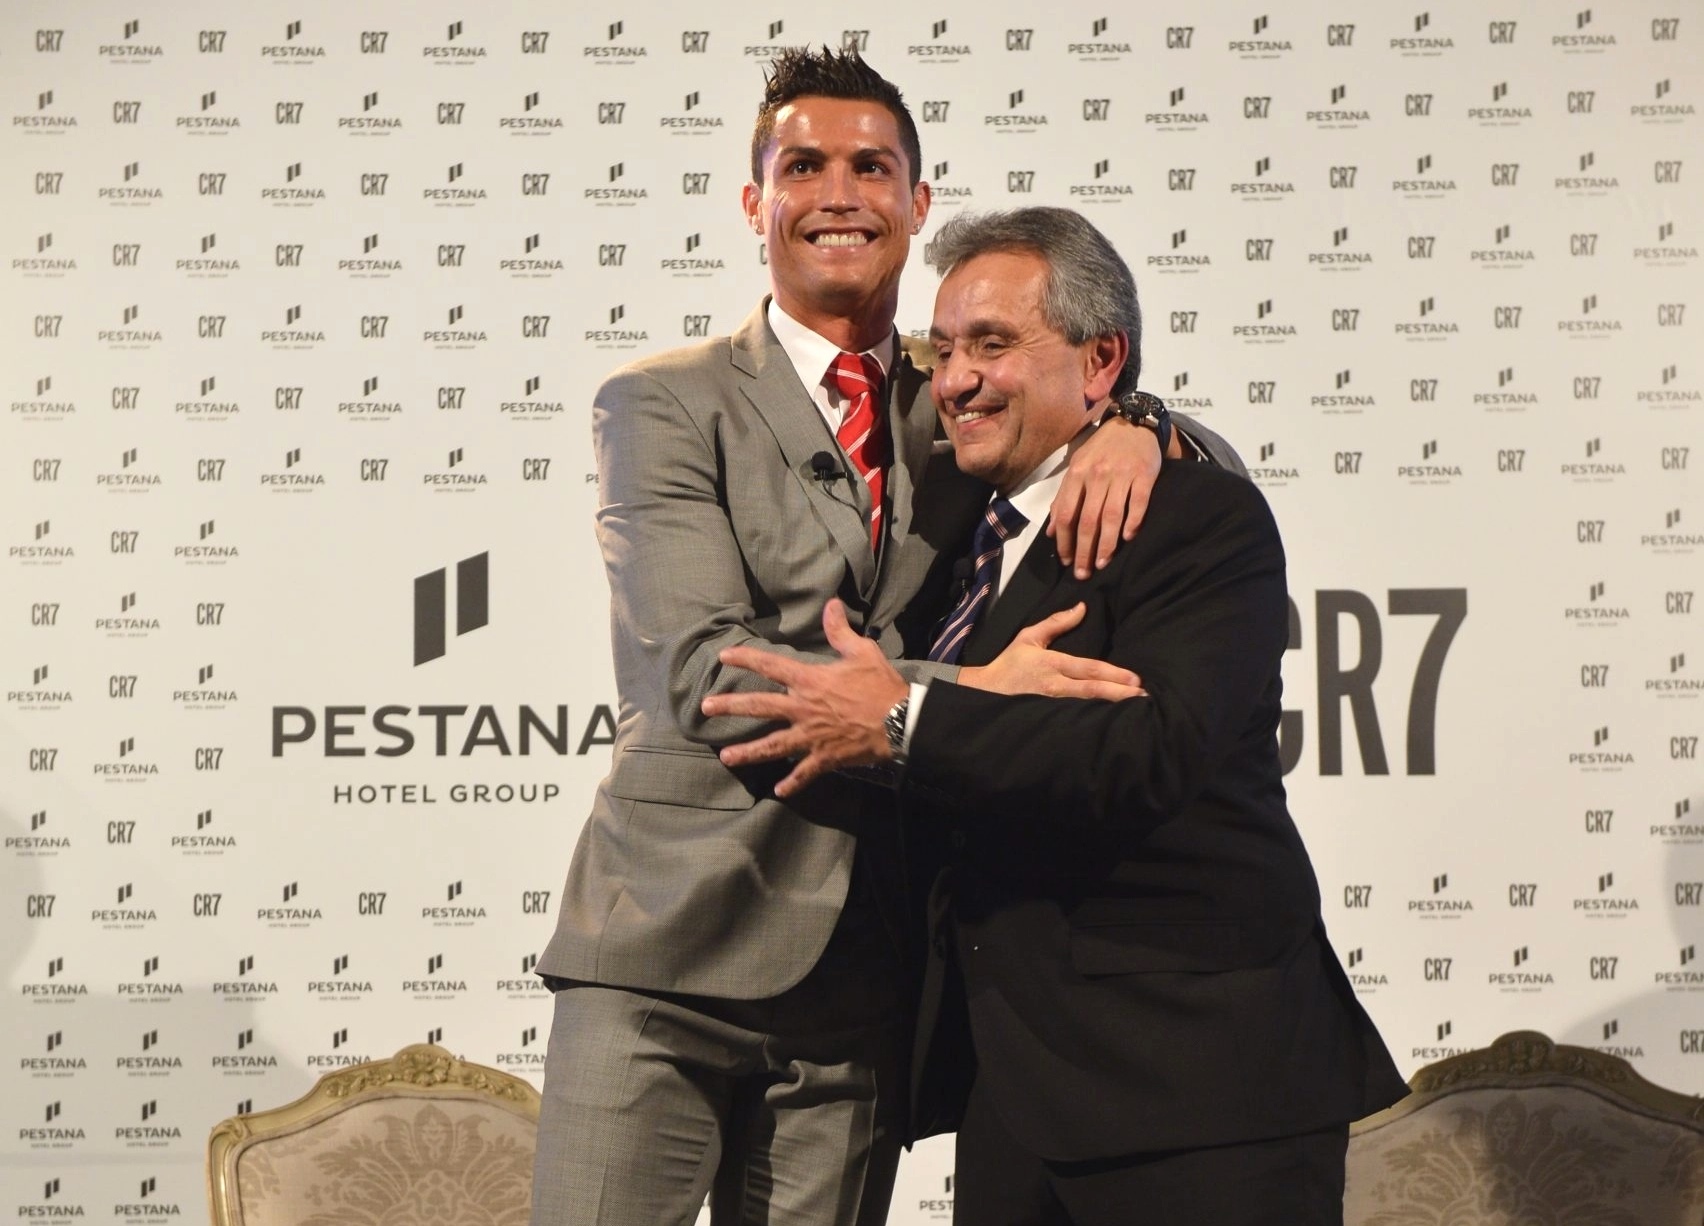 Belle union de Cristiano Ronaldo avec Dionísio Pestana